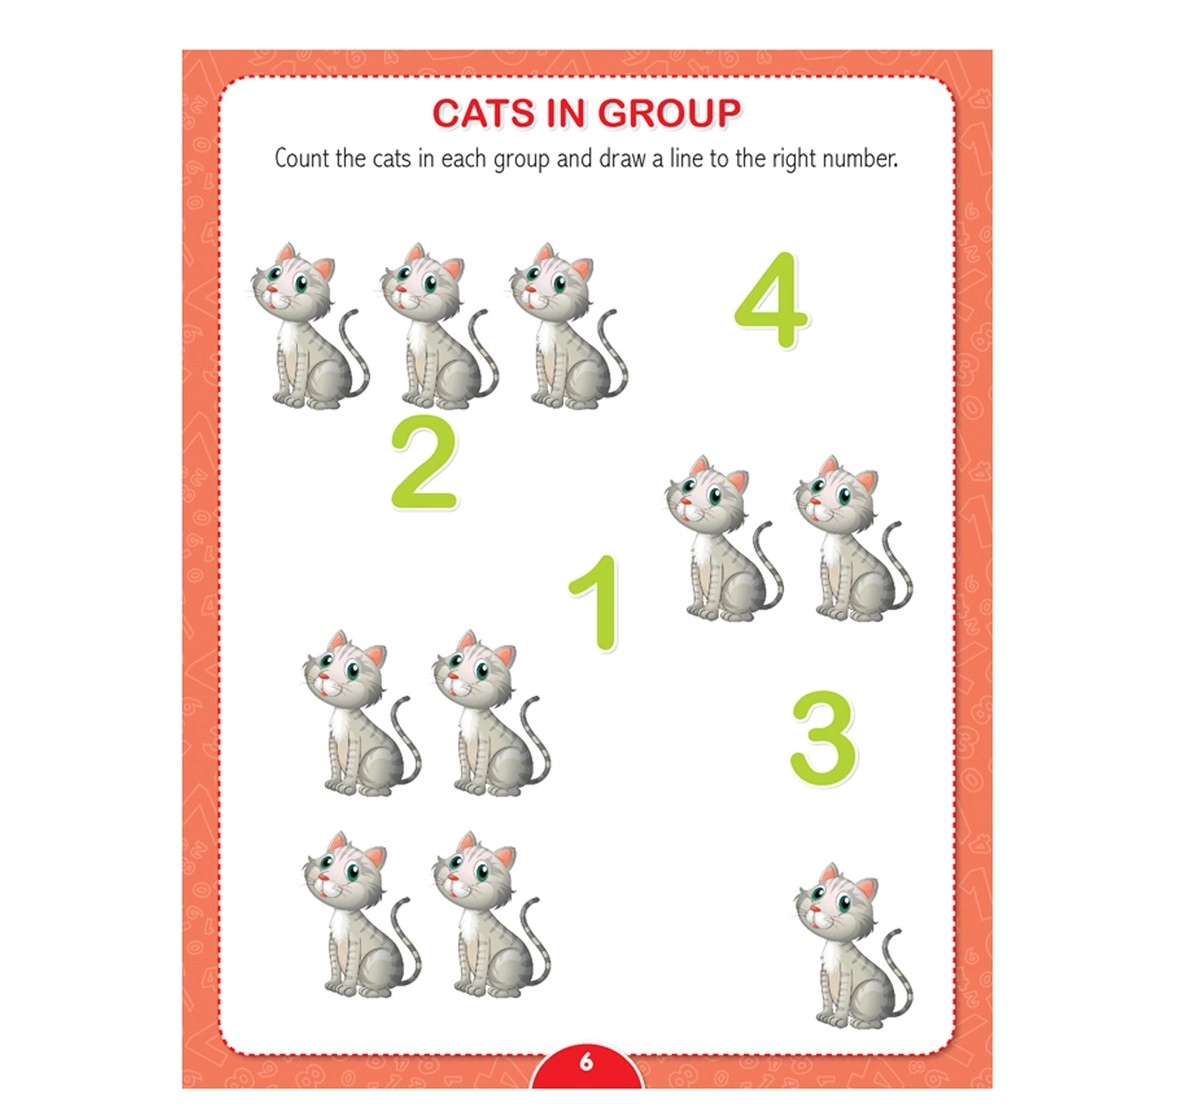 Dreamland Paperback Kinder Garden Maths Worksheets Books for Kids 4Y+, Multicolour